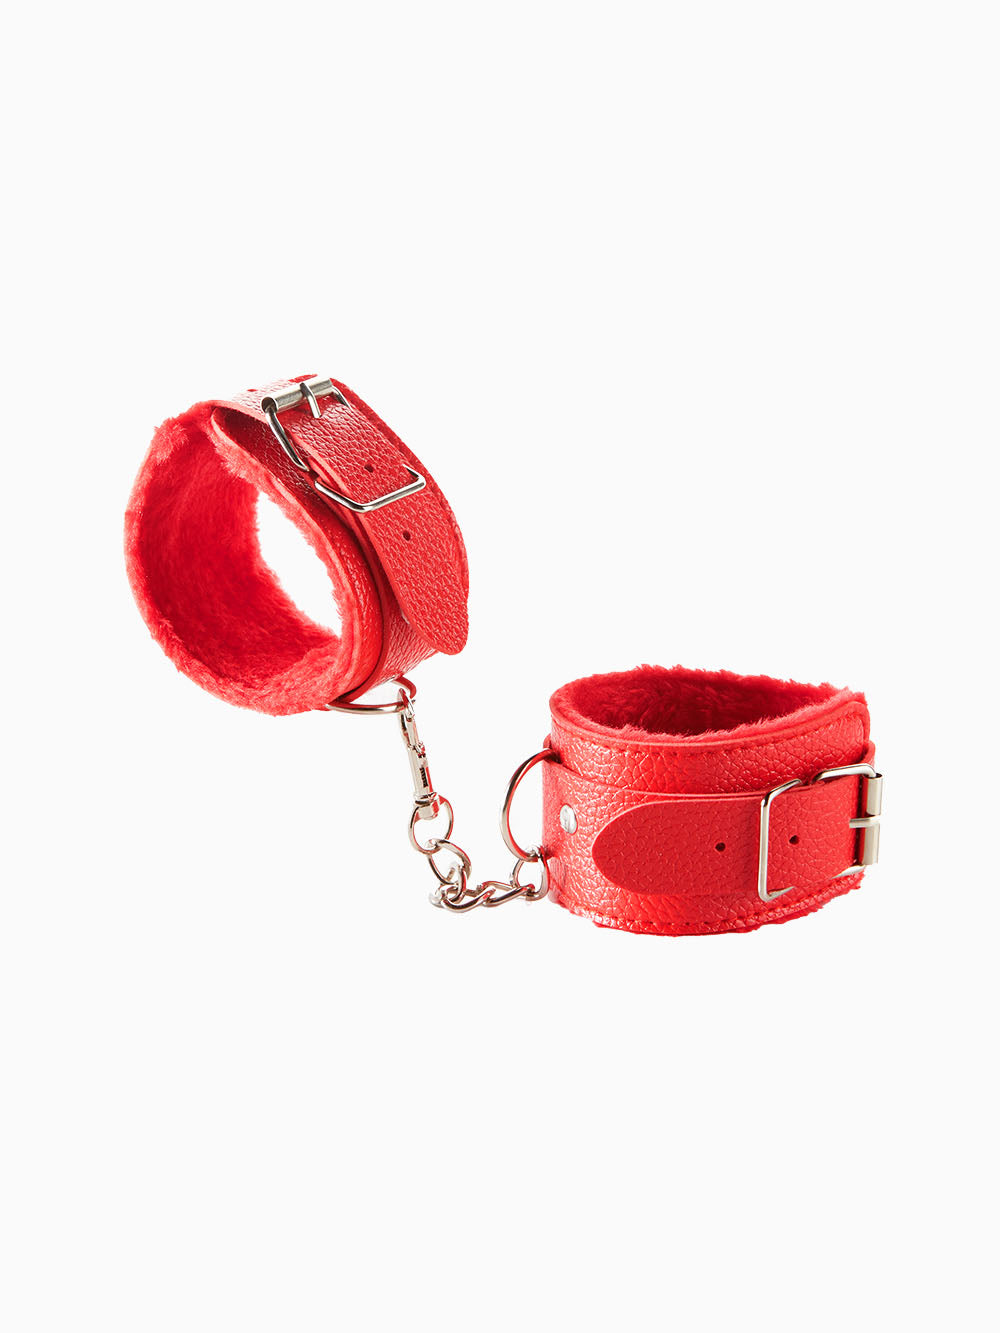 Pillow Talk Beginner Lined Handcuffs, Red